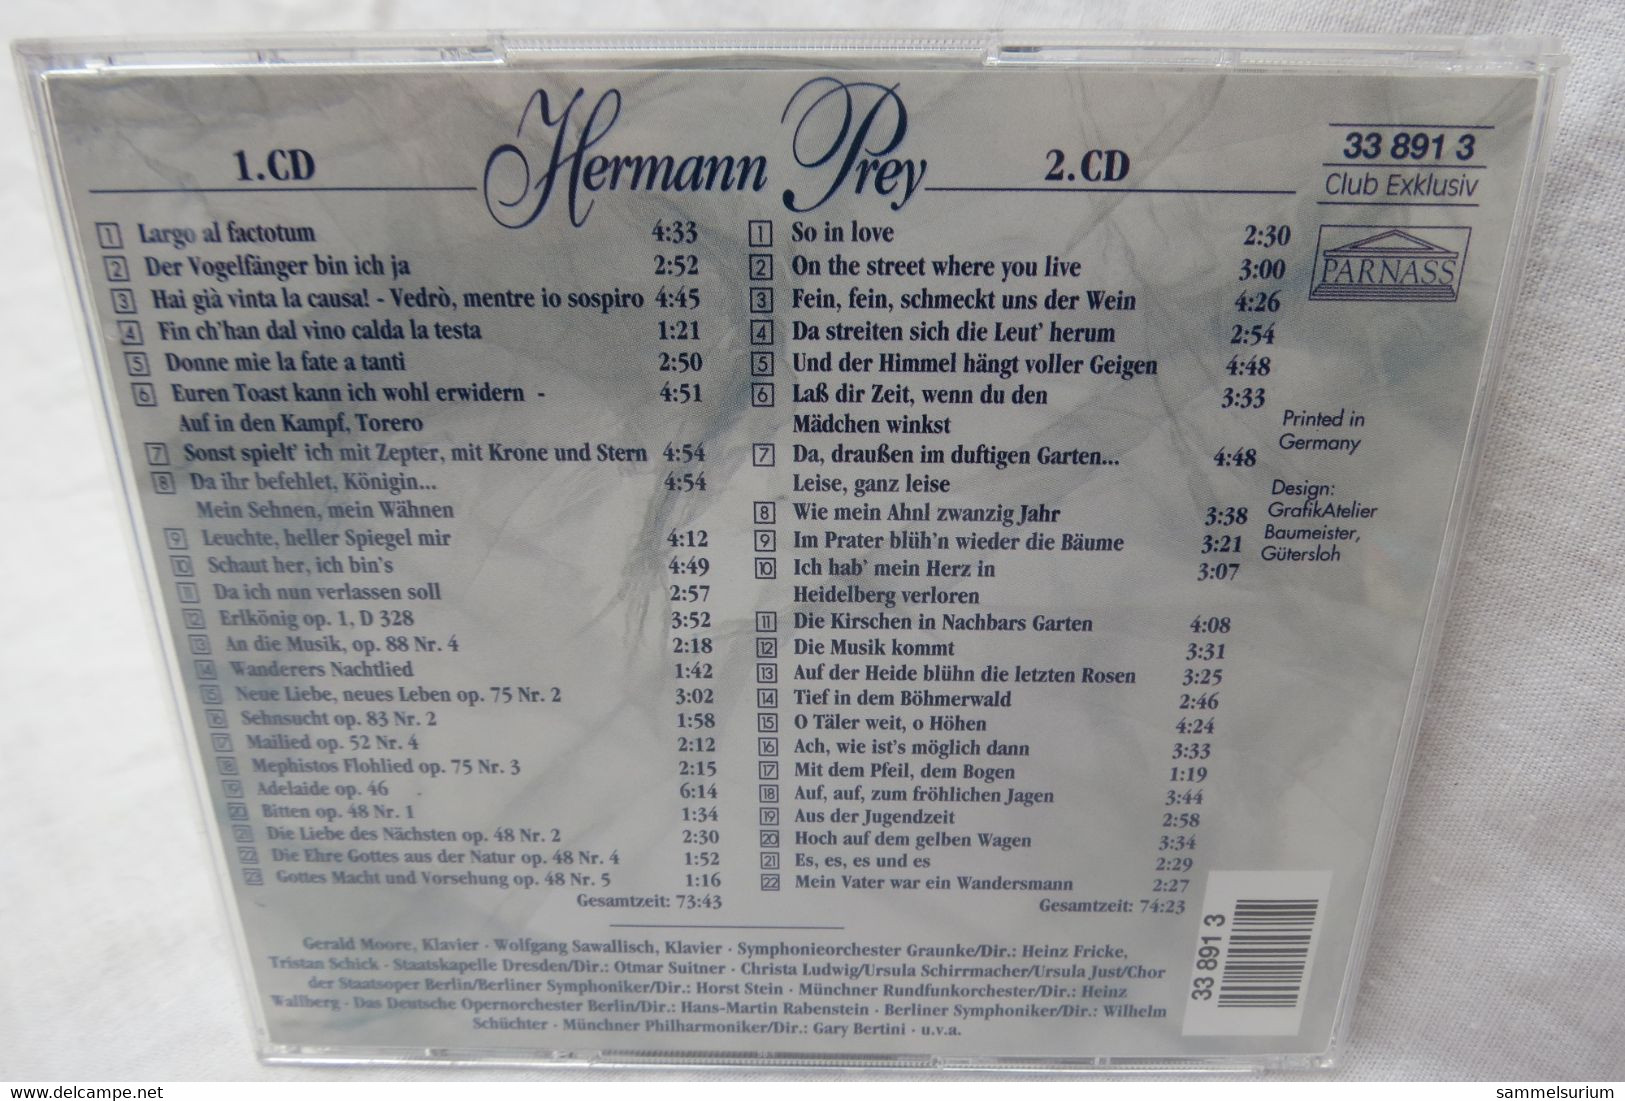 2 CDs "Hermann Prey" Ein Leben Für Die Musik, Von Der Oper Bis Zum Volkslied - Opera